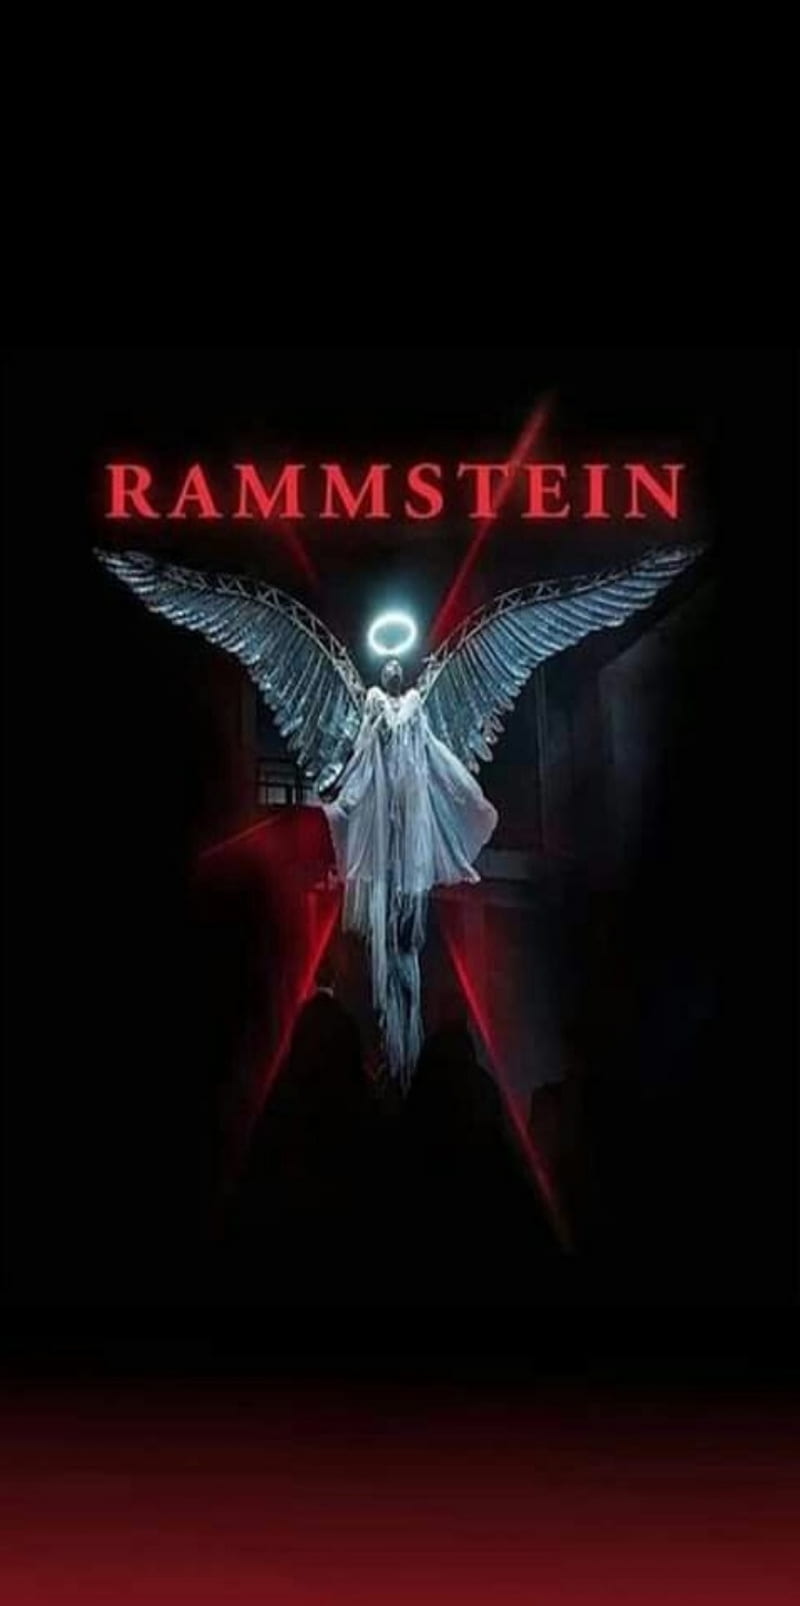 Rammstein wallpaper by tiamanson - Download on ZEDGE™ | 1b30